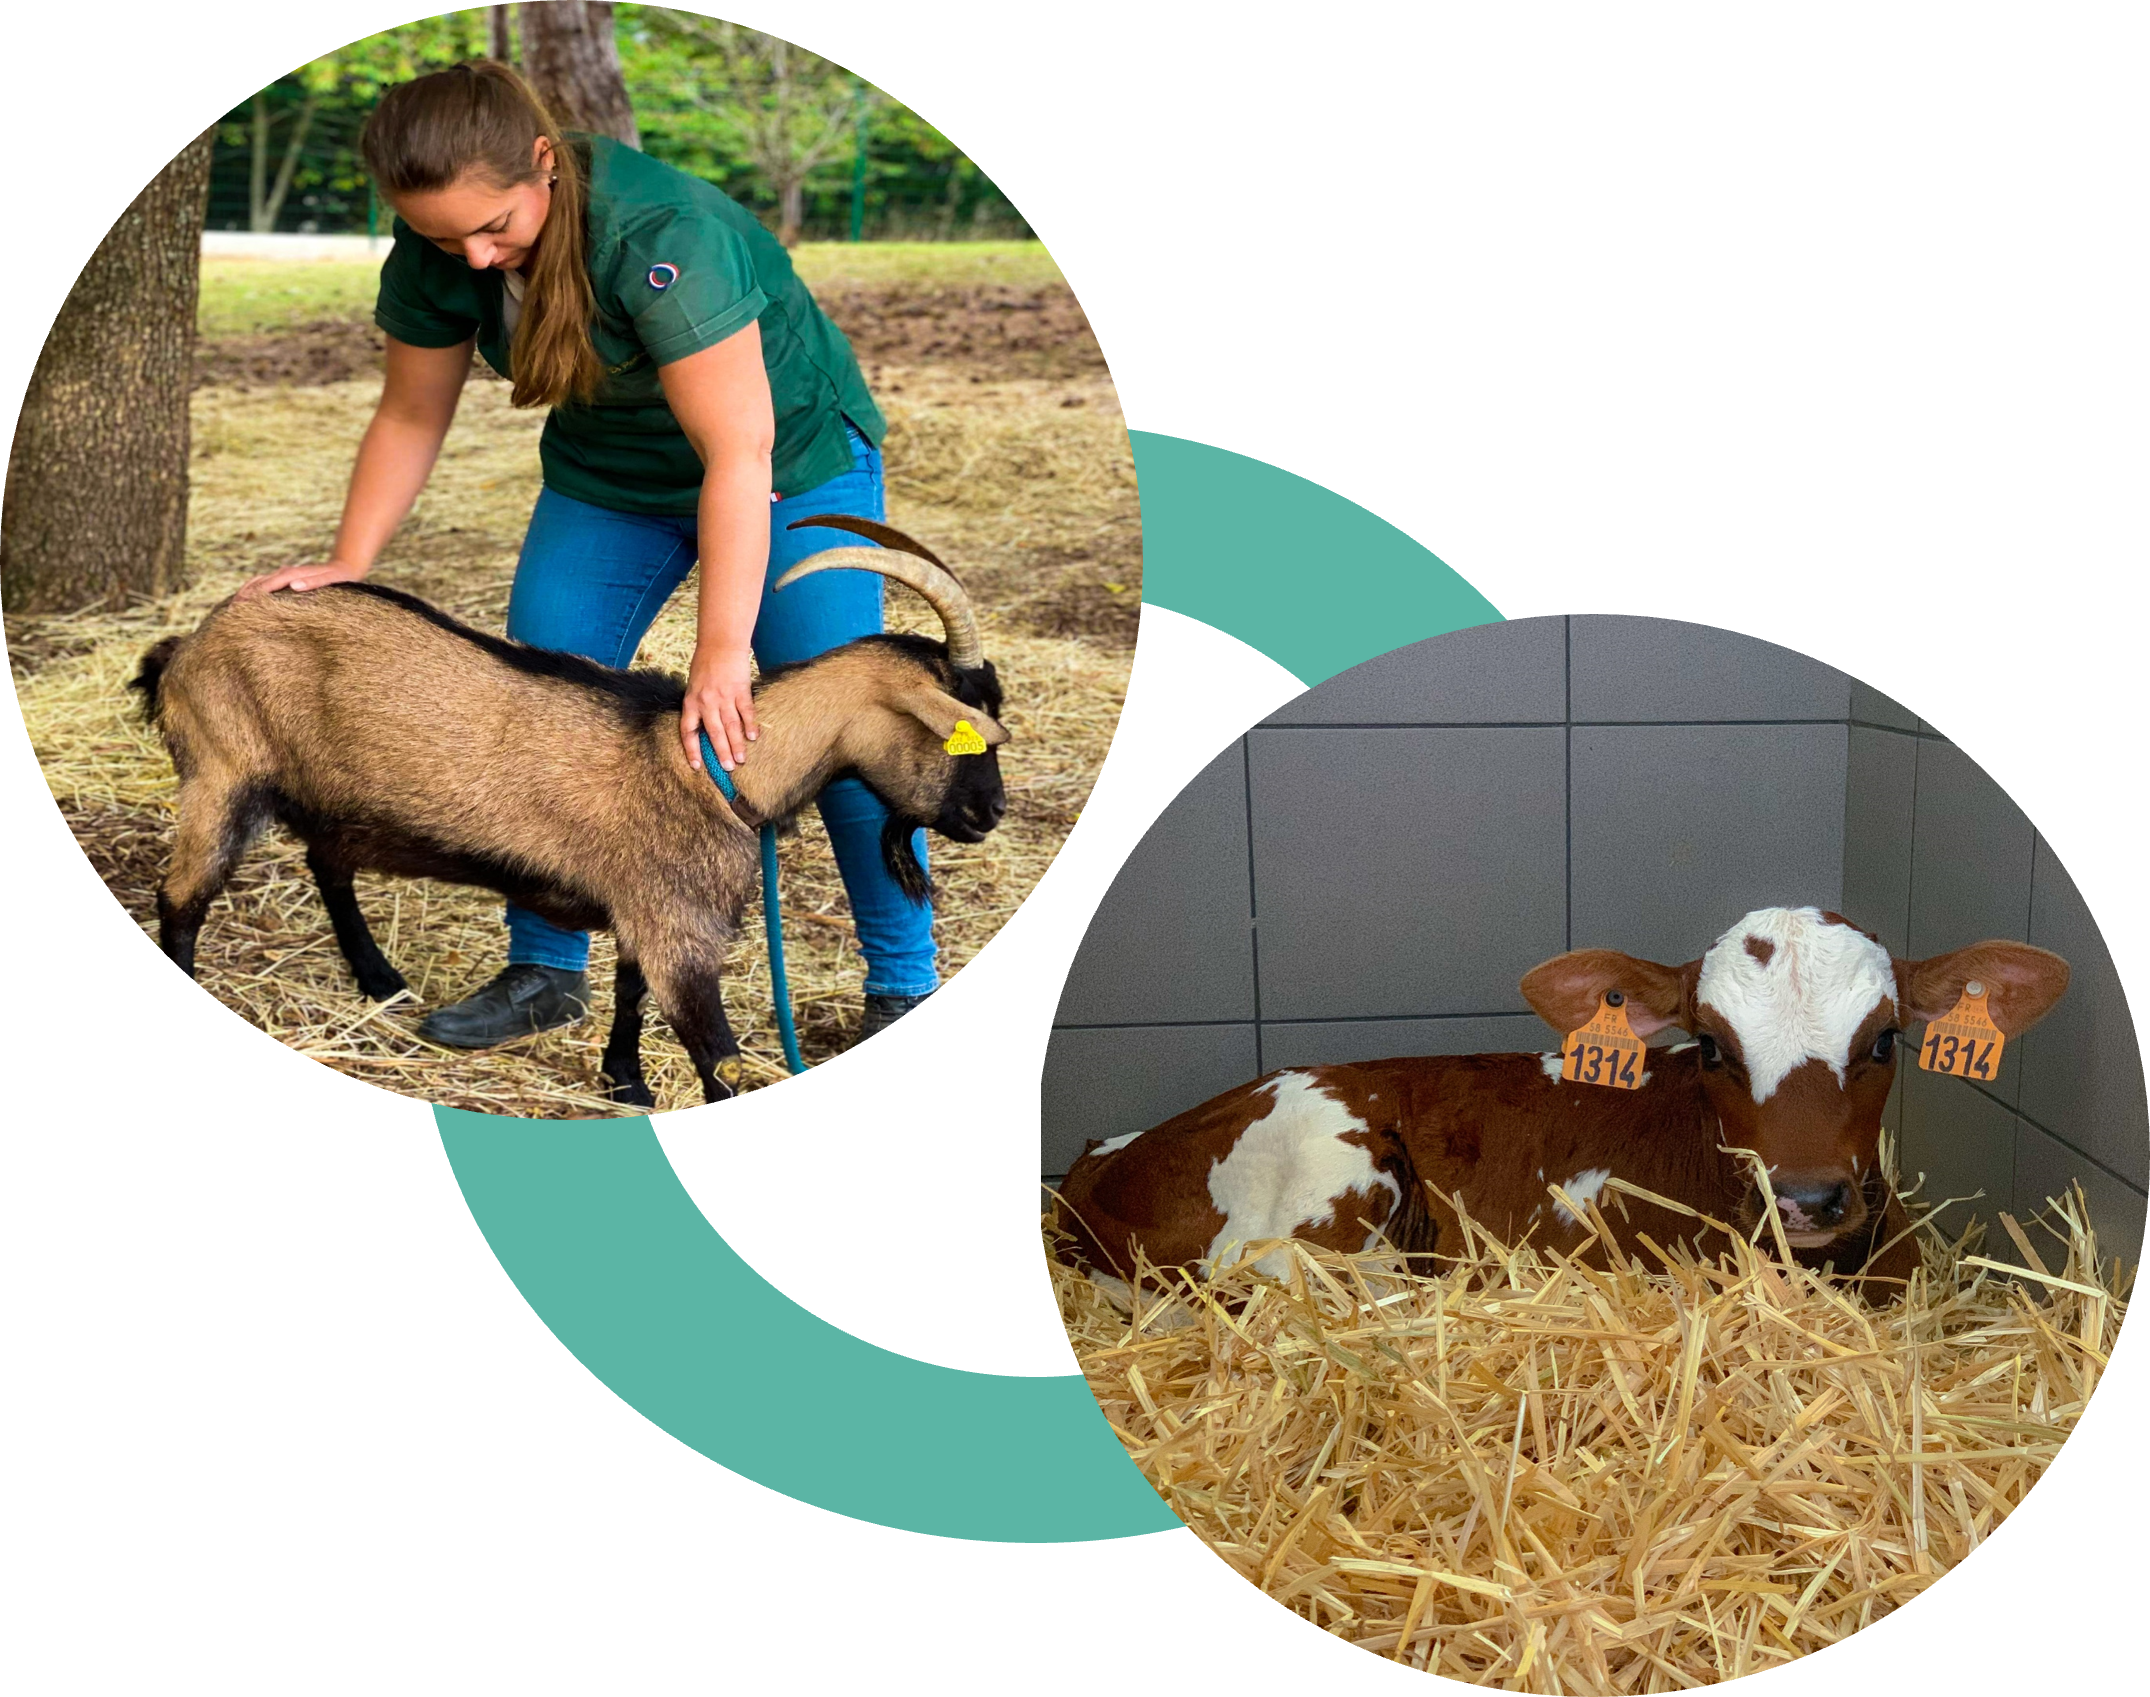 Ostéopathie vétérinaire consultation animal bovin veau ruminants chèvre mouton Pauline Bourdette